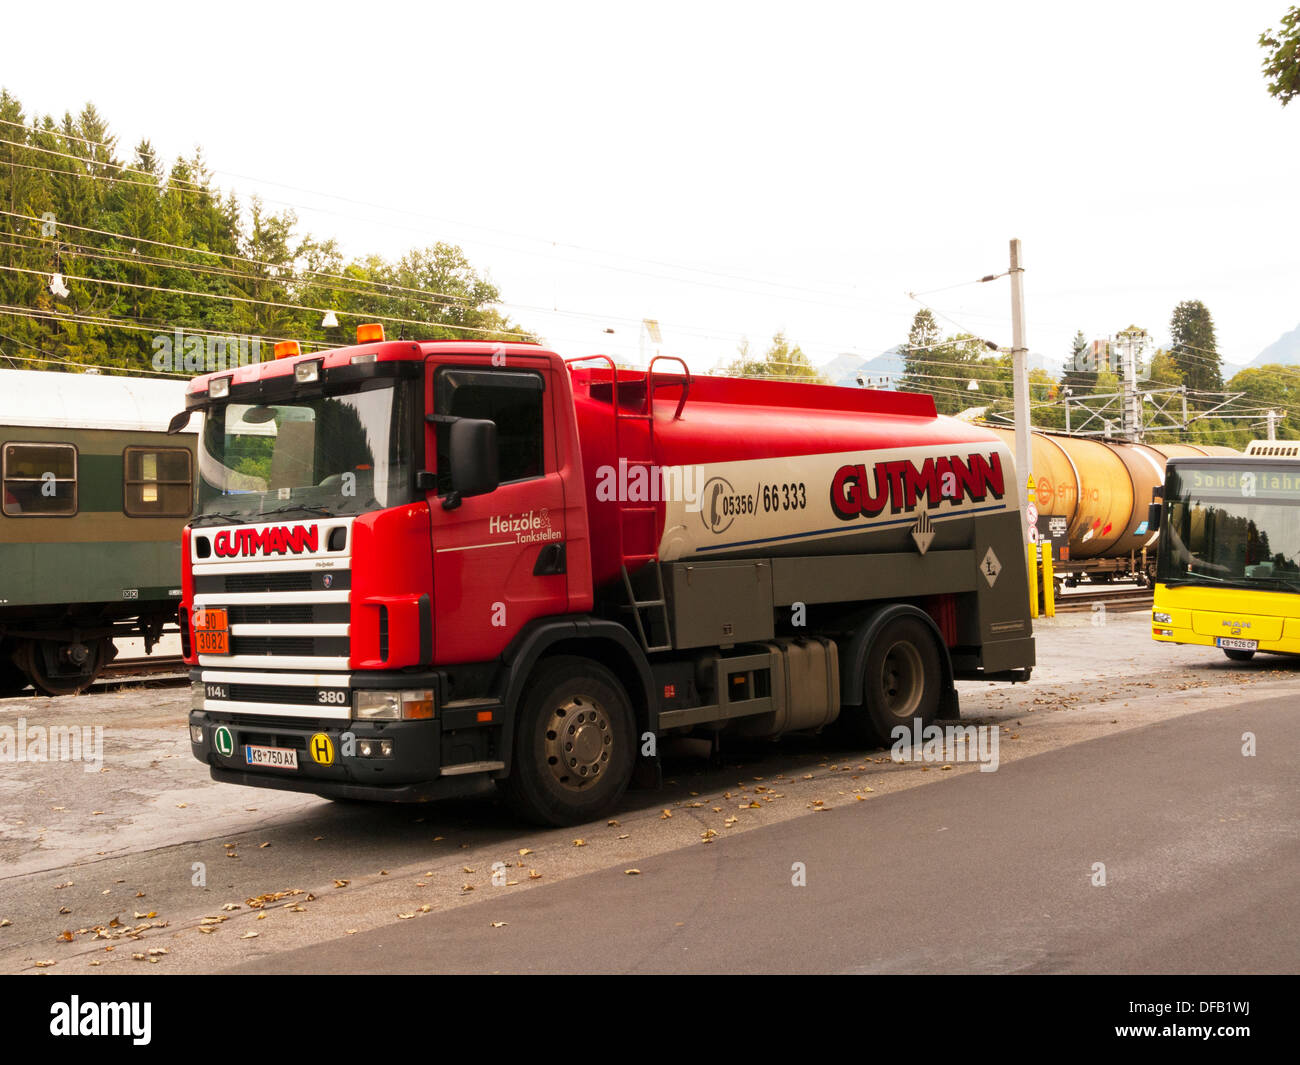 Autriche kitzbuhel Europe camion-citerne de carburant gutmann handel heizole en stationnement Banque D'Images